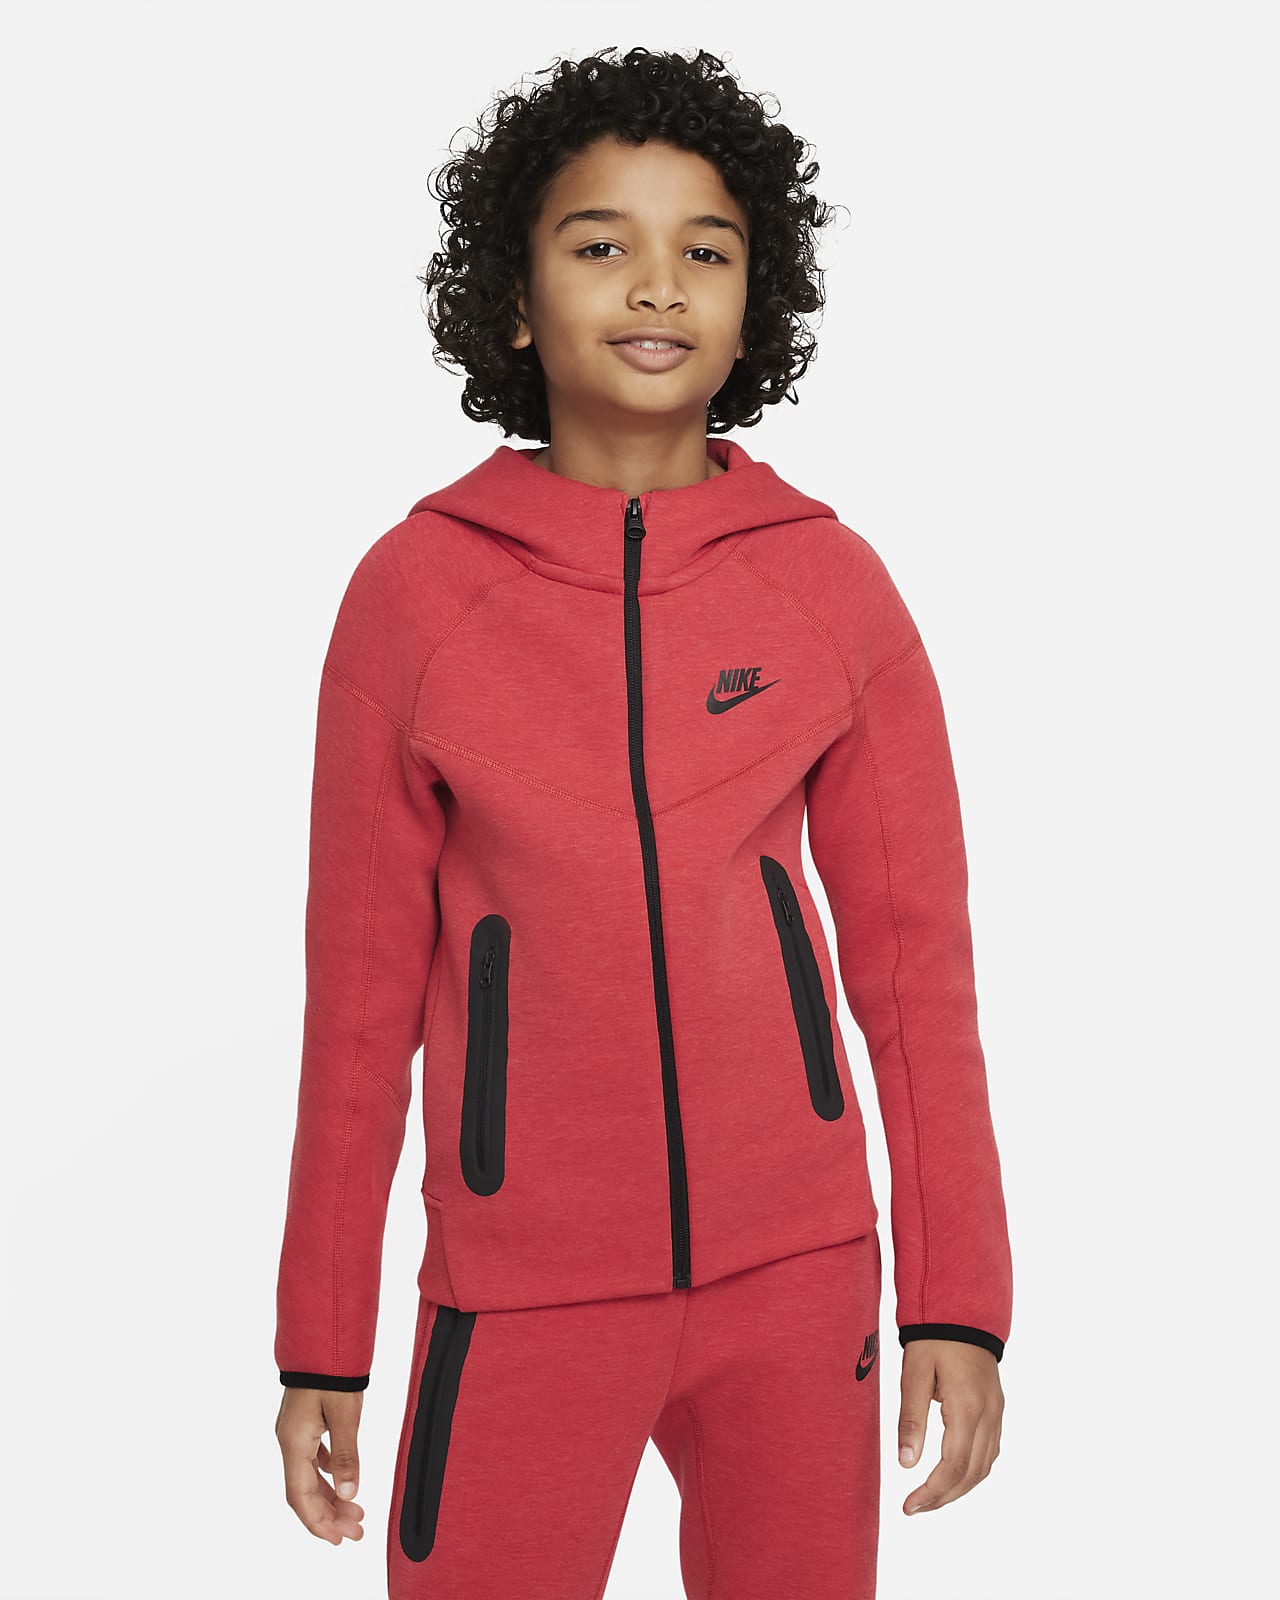 Sudadera Niño Nike Sportswear Kids Rojo